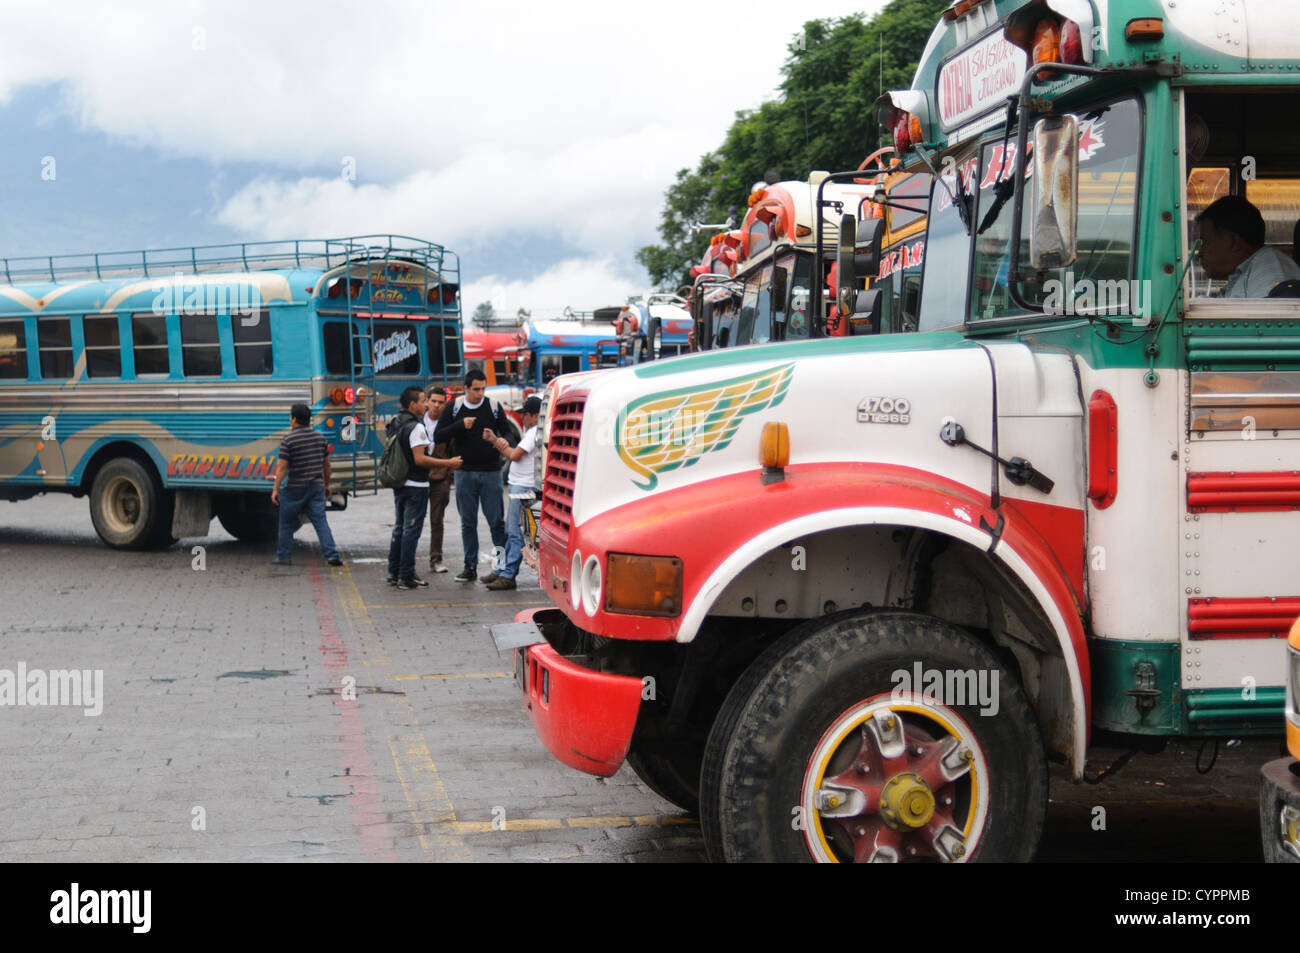 Huhn Busse aufgereiht hinter dem Mercado Municipal (Stadtmarkt) in Antigua, Guatemala. Aus diesem umfangreichen zentralen Busbahnhof strahlenförmig der Routen in Guatemala. Oft bunt bemalt, die Huhn-Busse sind nachgerüsteten amerikanische Schulbusse und bieten ein günstiges Transportmittel im ganzen Land. Stockfoto